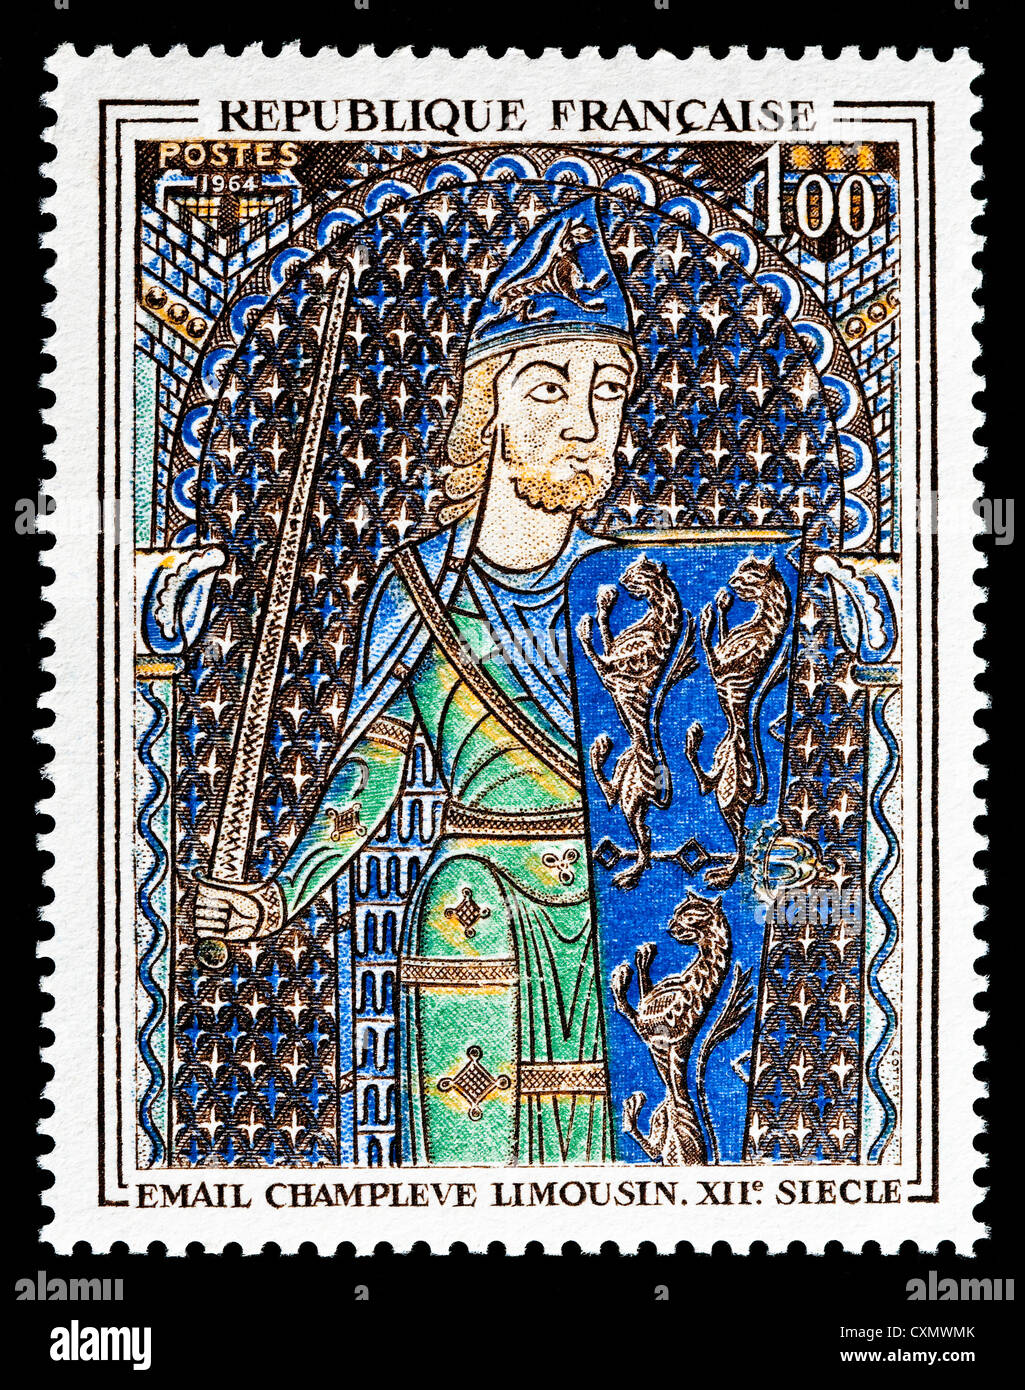 Ungenutzte 1964 französische Briefmarke "Geoffroi IV le Bel" in Glaskörper Schmelz darstellt. Stockfoto